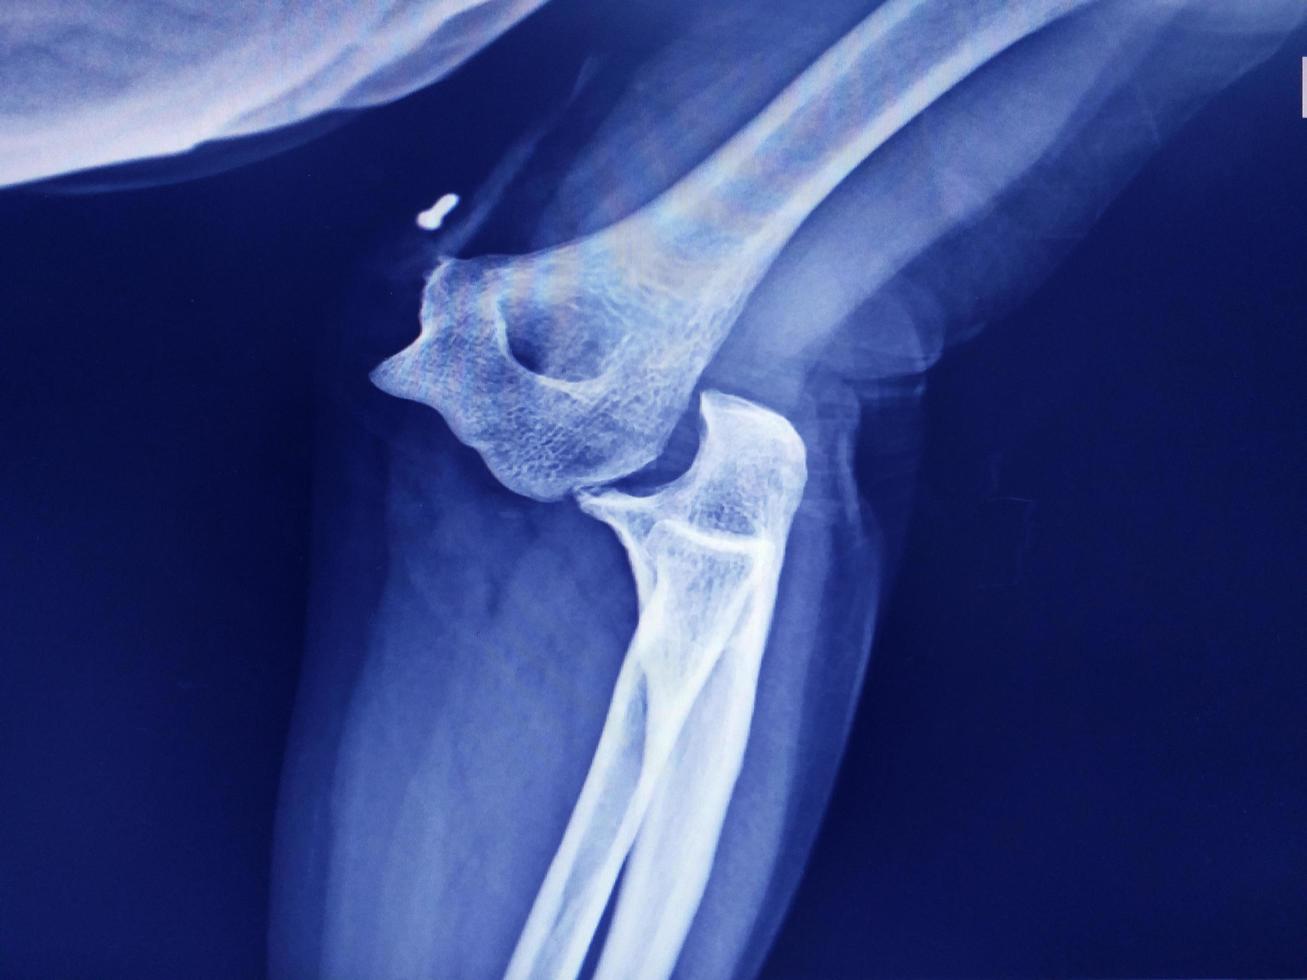 imagen de rayos x de dislocación de la articulación del codo. foto